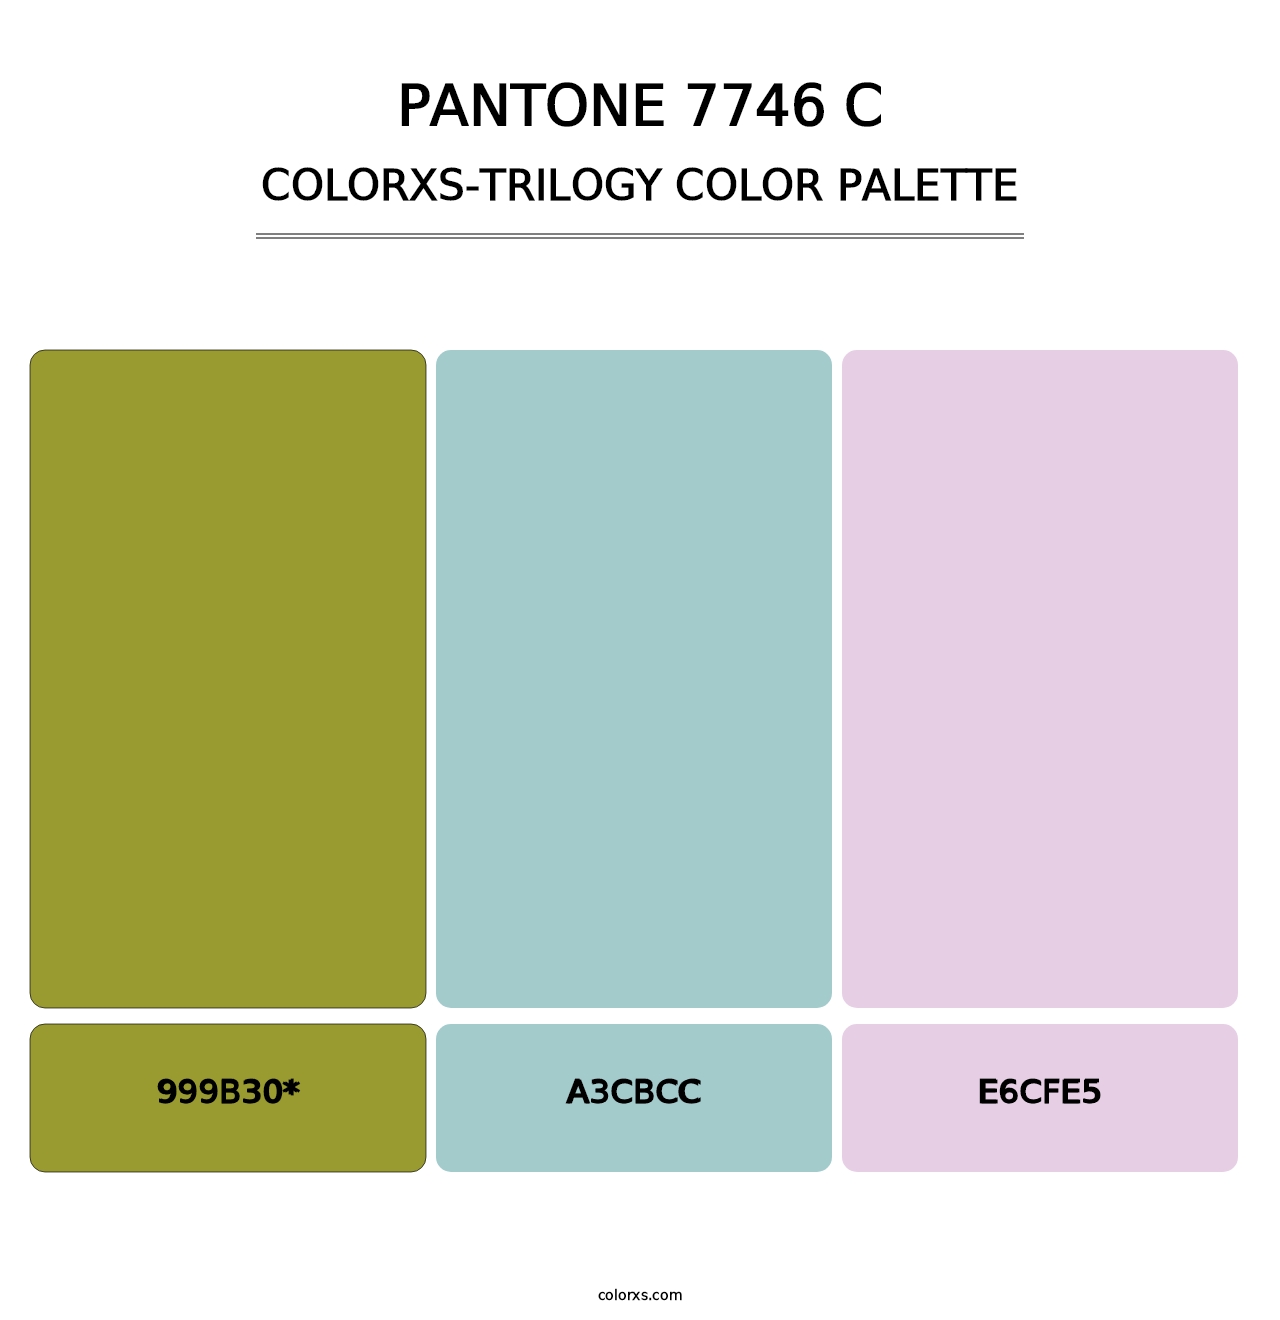 PANTONE 7746 C - Colorxs Trilogy Palette